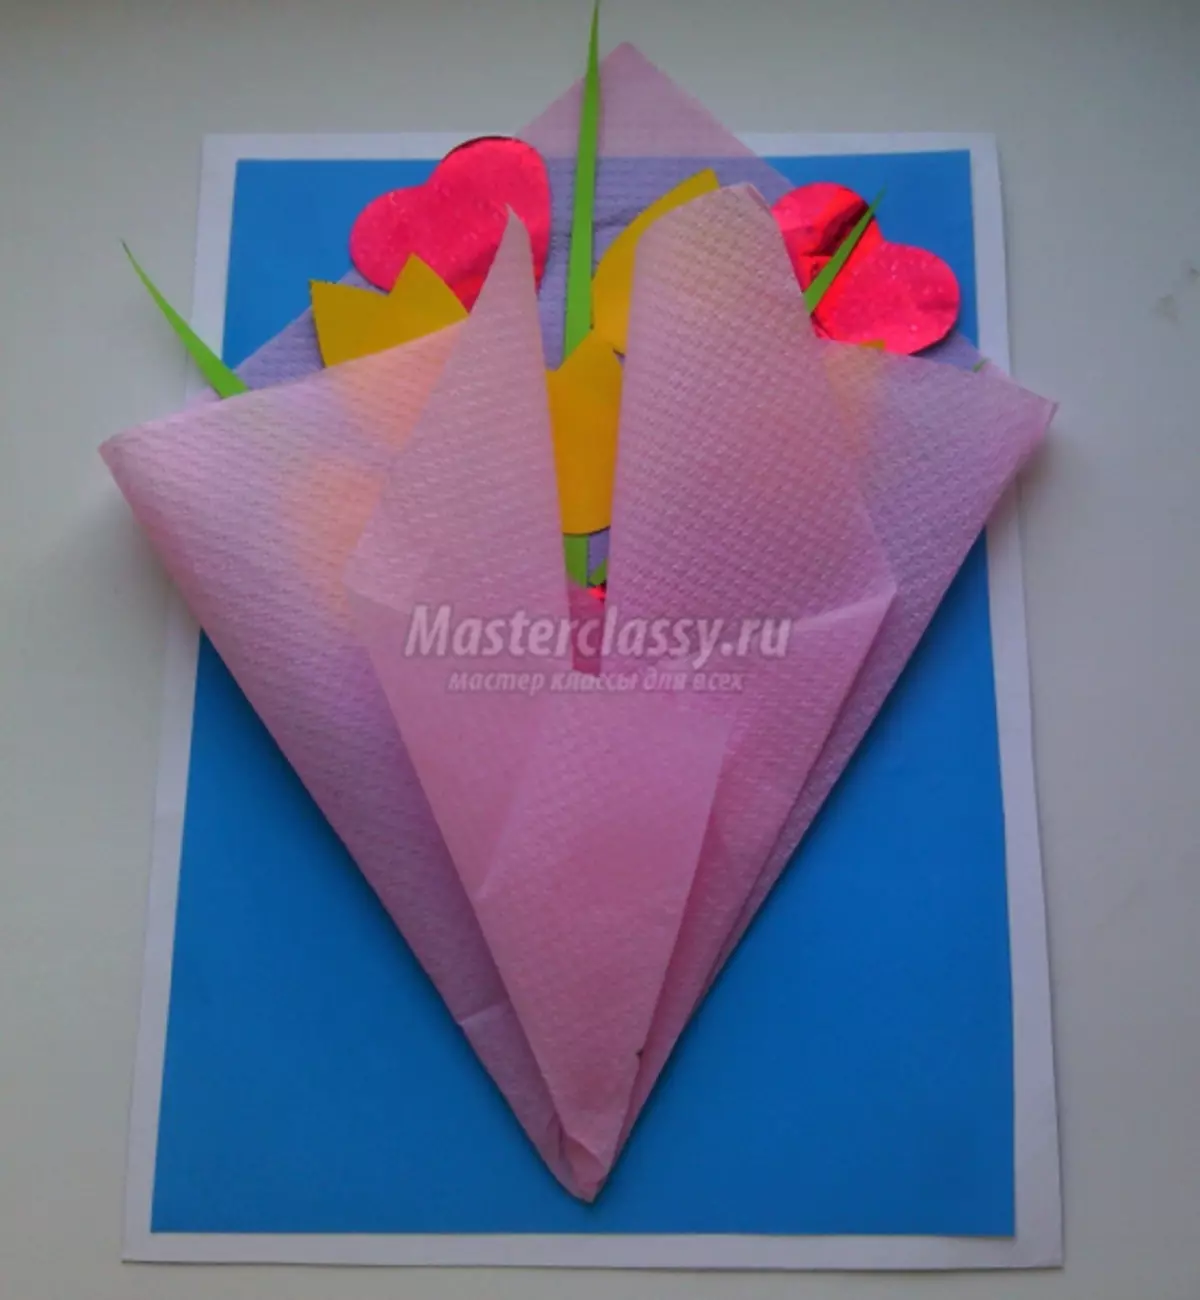 Kuidas teha lahtiselt paberkaart lilledega 8. märtsiks